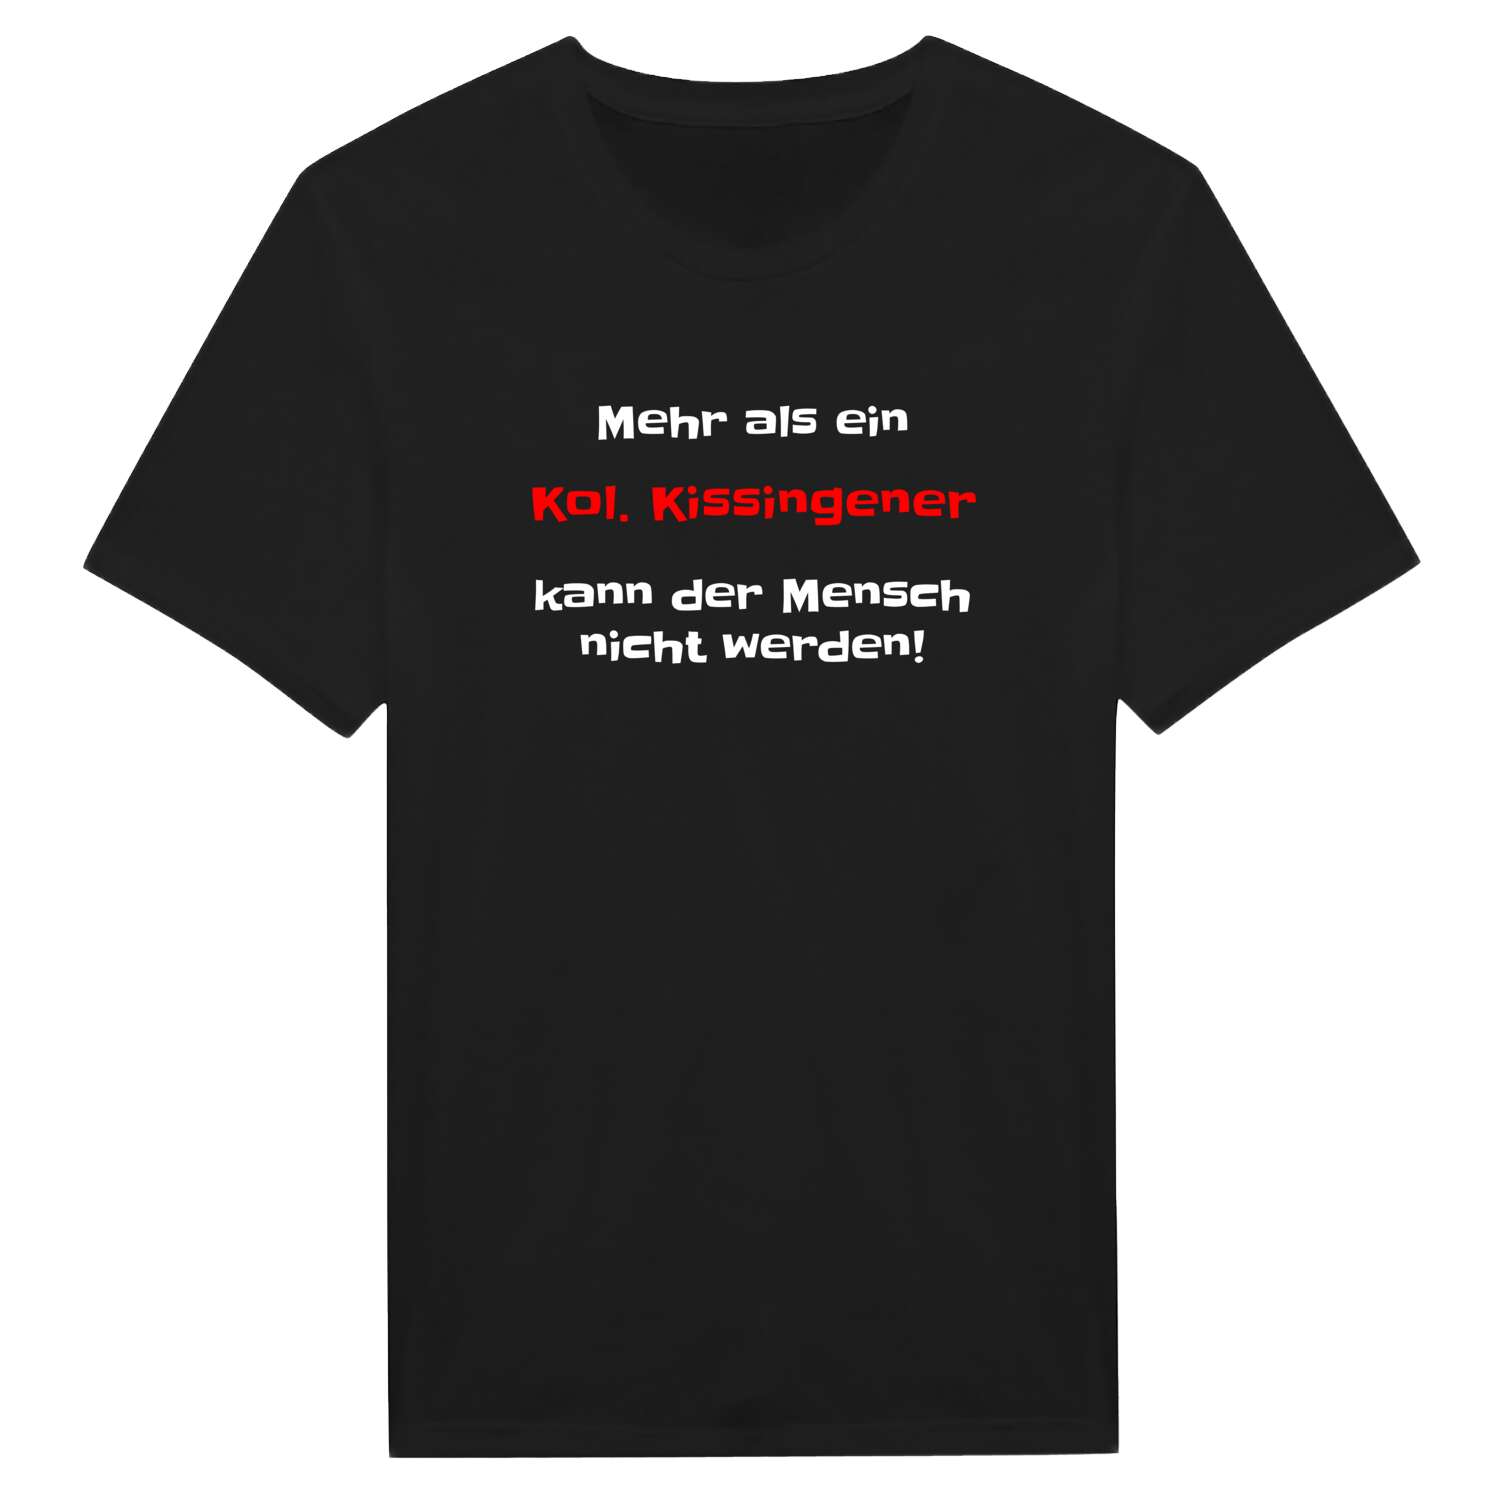 Kol. Kissingen T-Shirt »Mehr als ein«